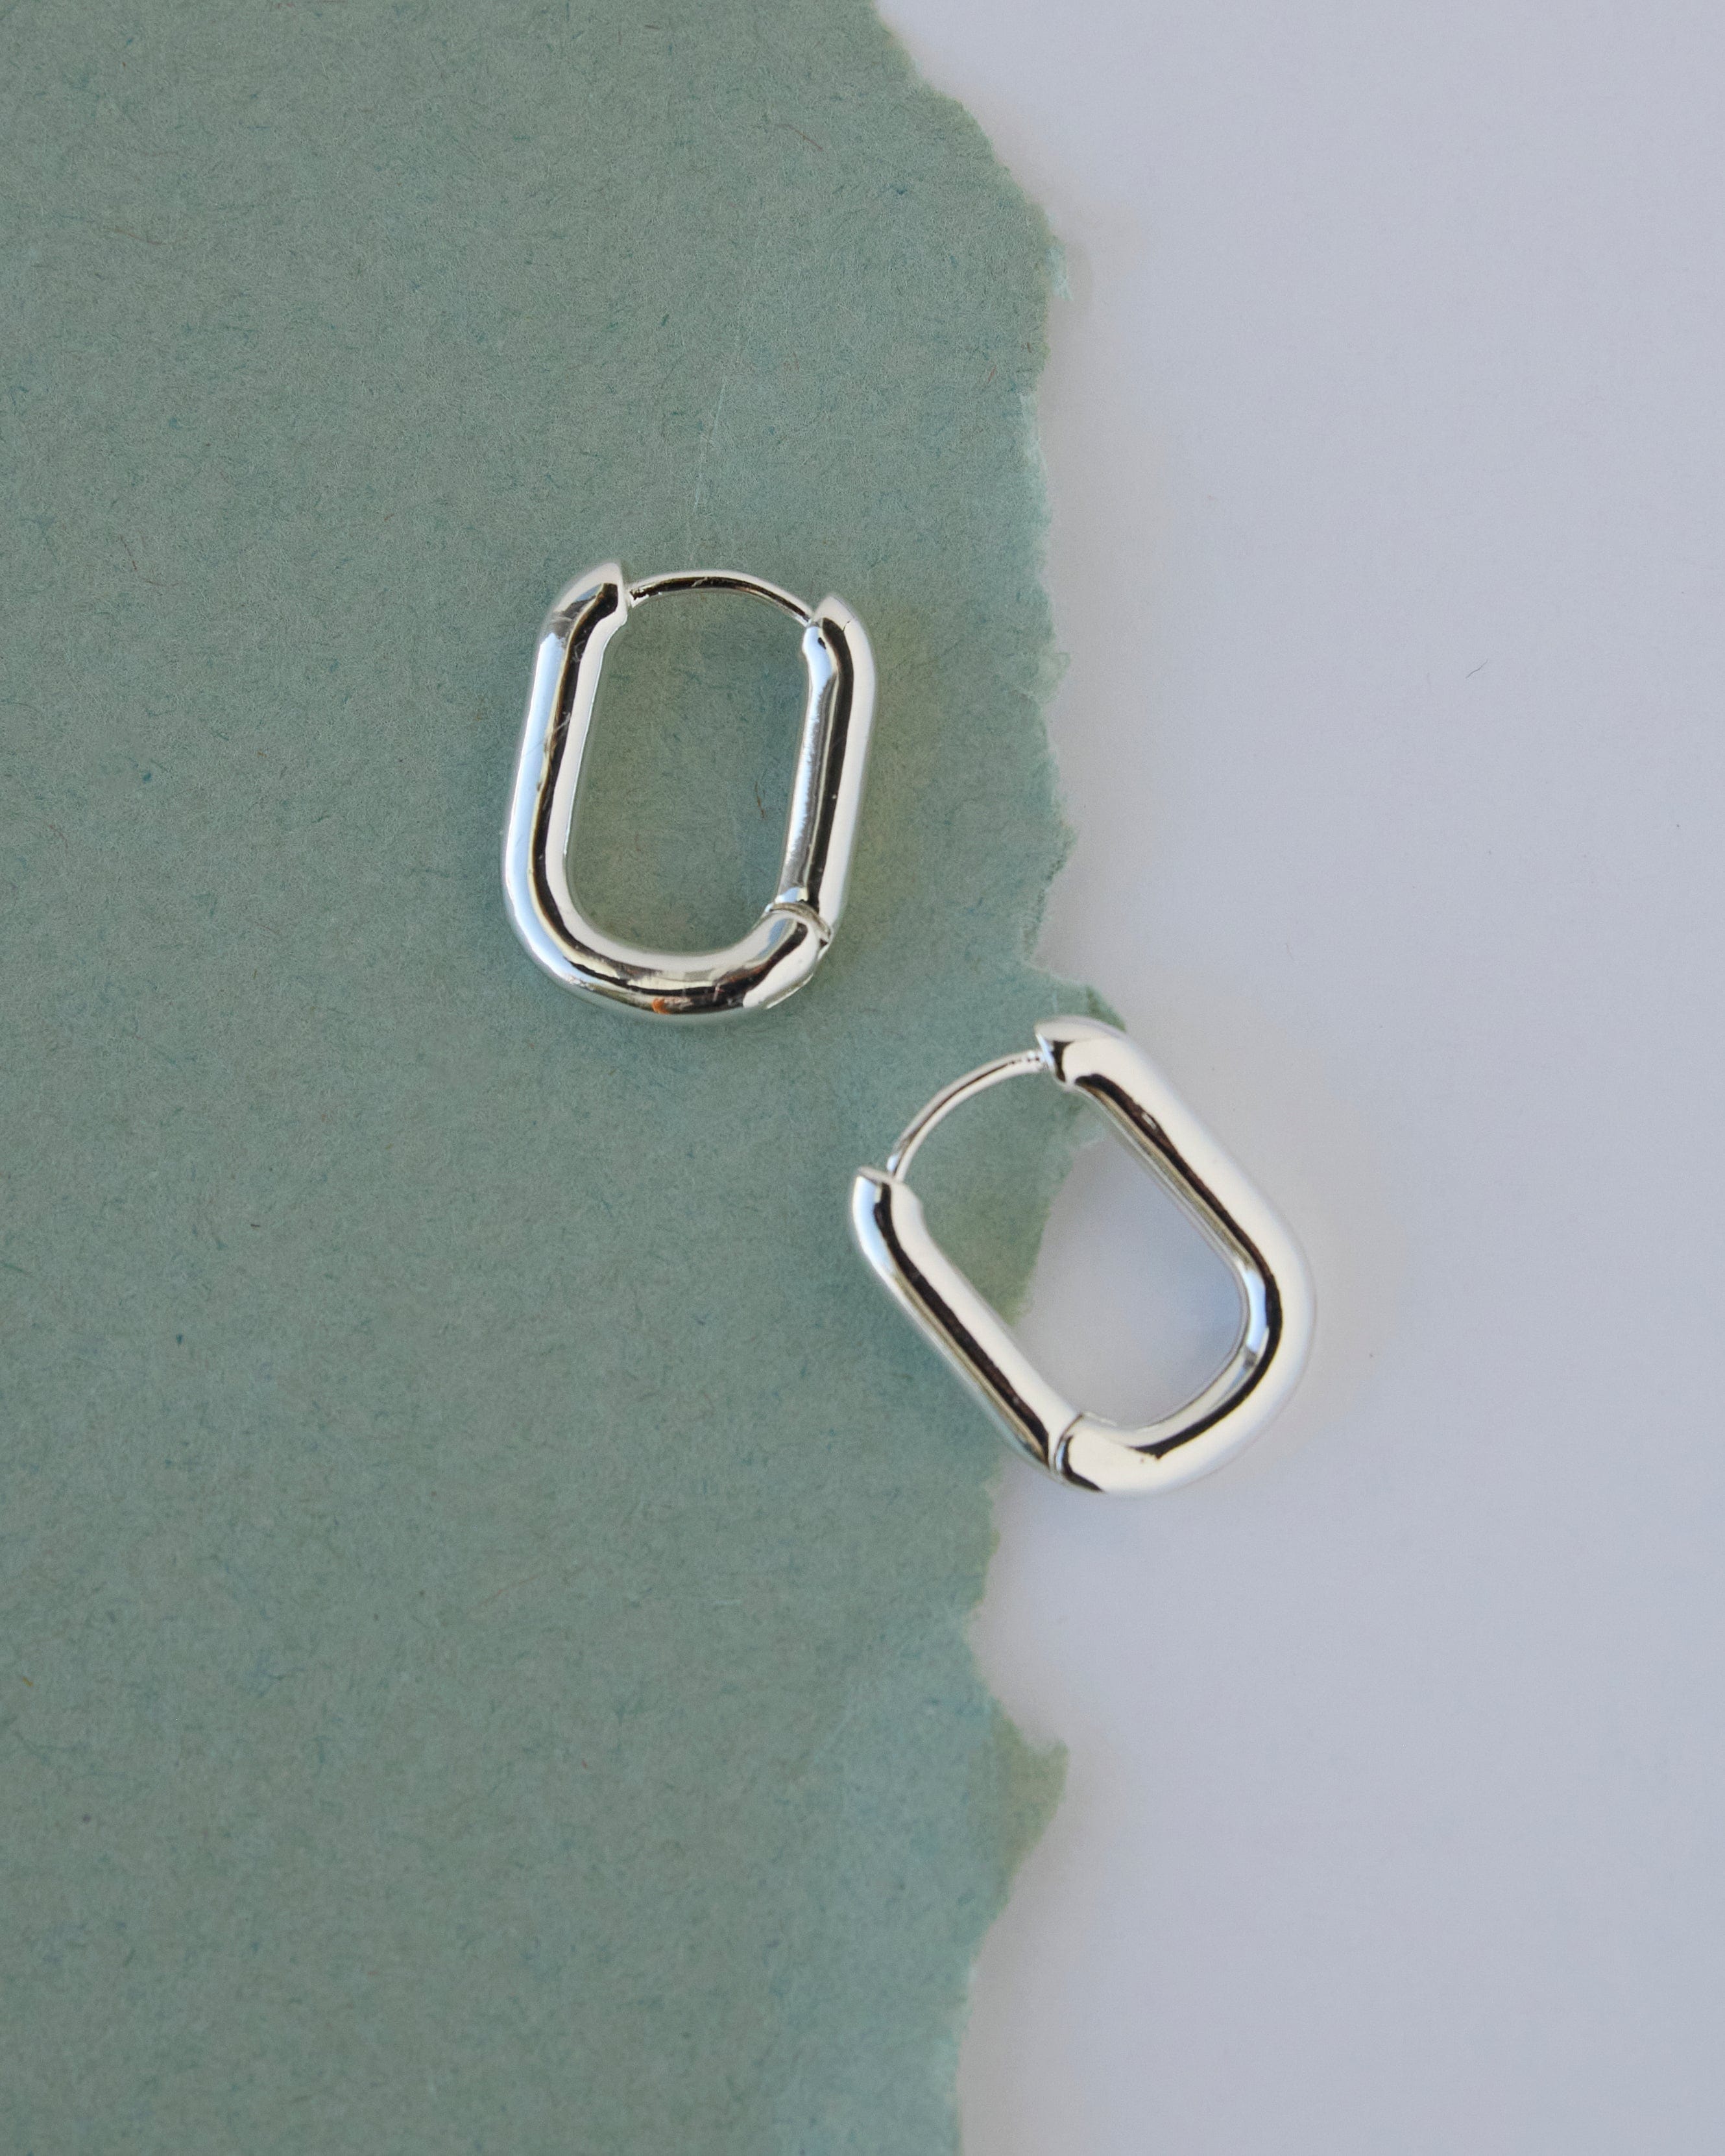 Silver curved hoop earrings.